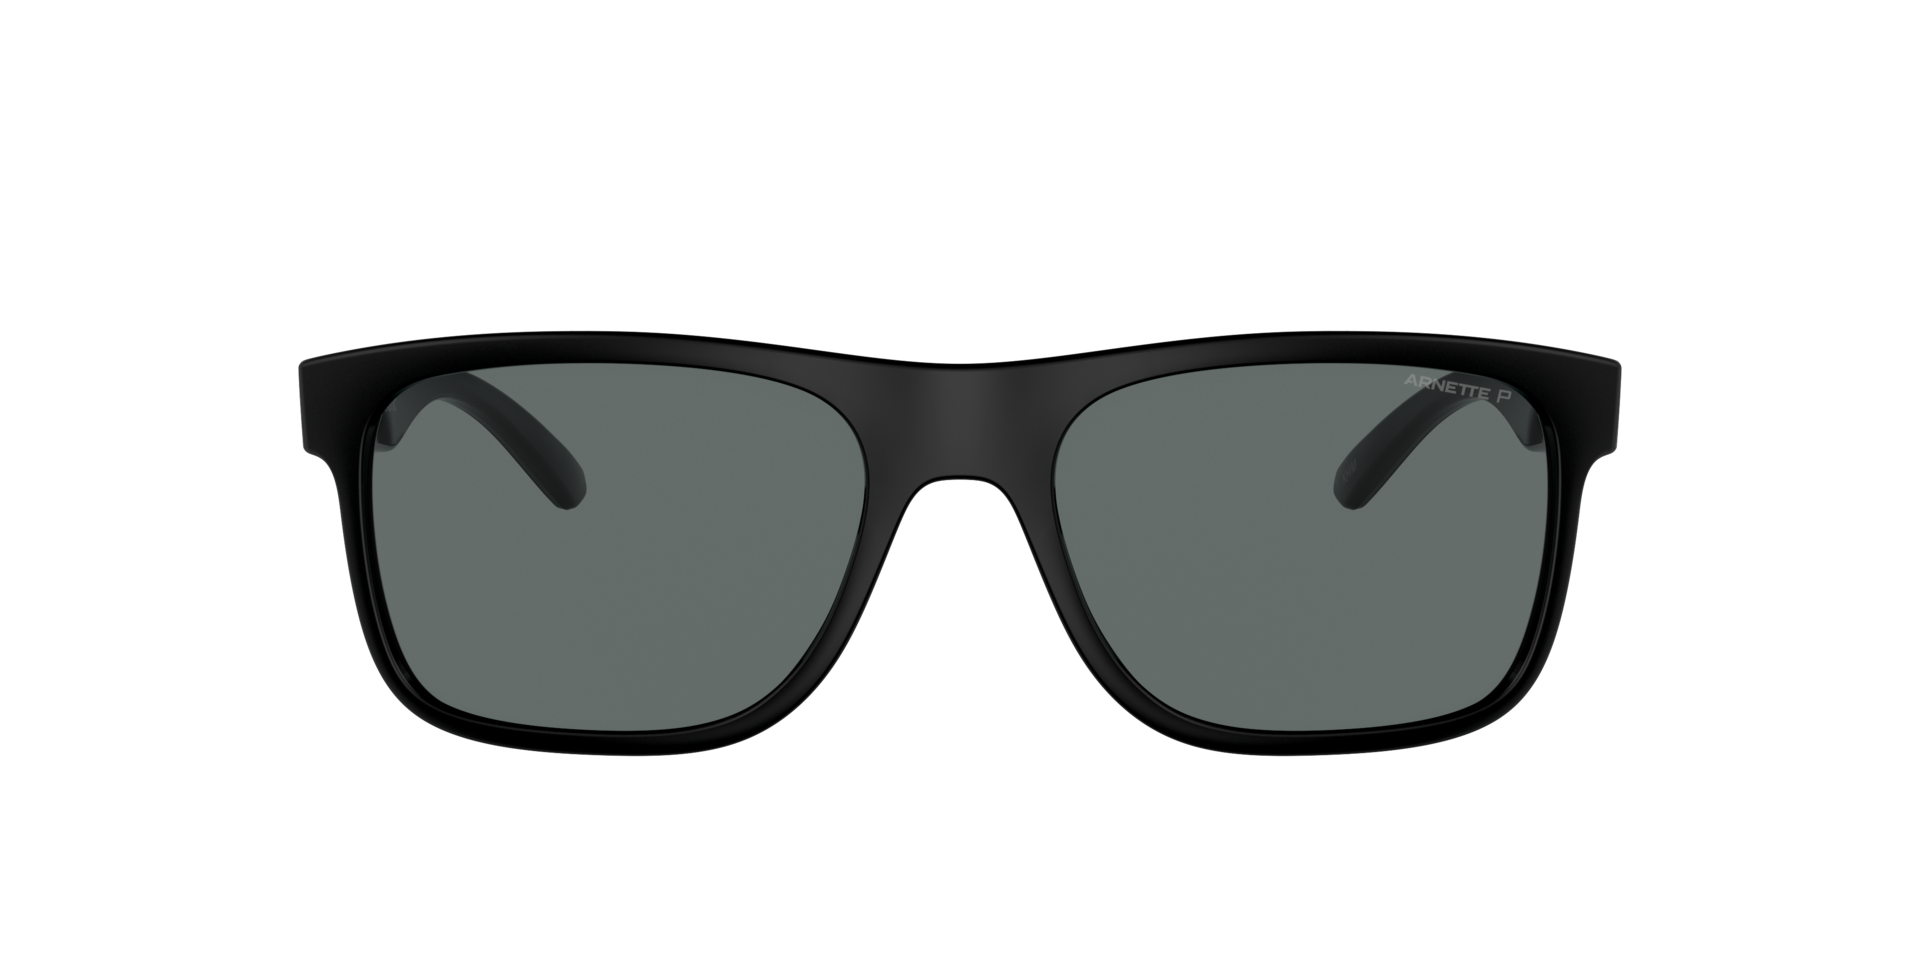 Das Bild zeigt die Sonnenbrille AN4341 290081 von der Marke Arnette in schwarz.